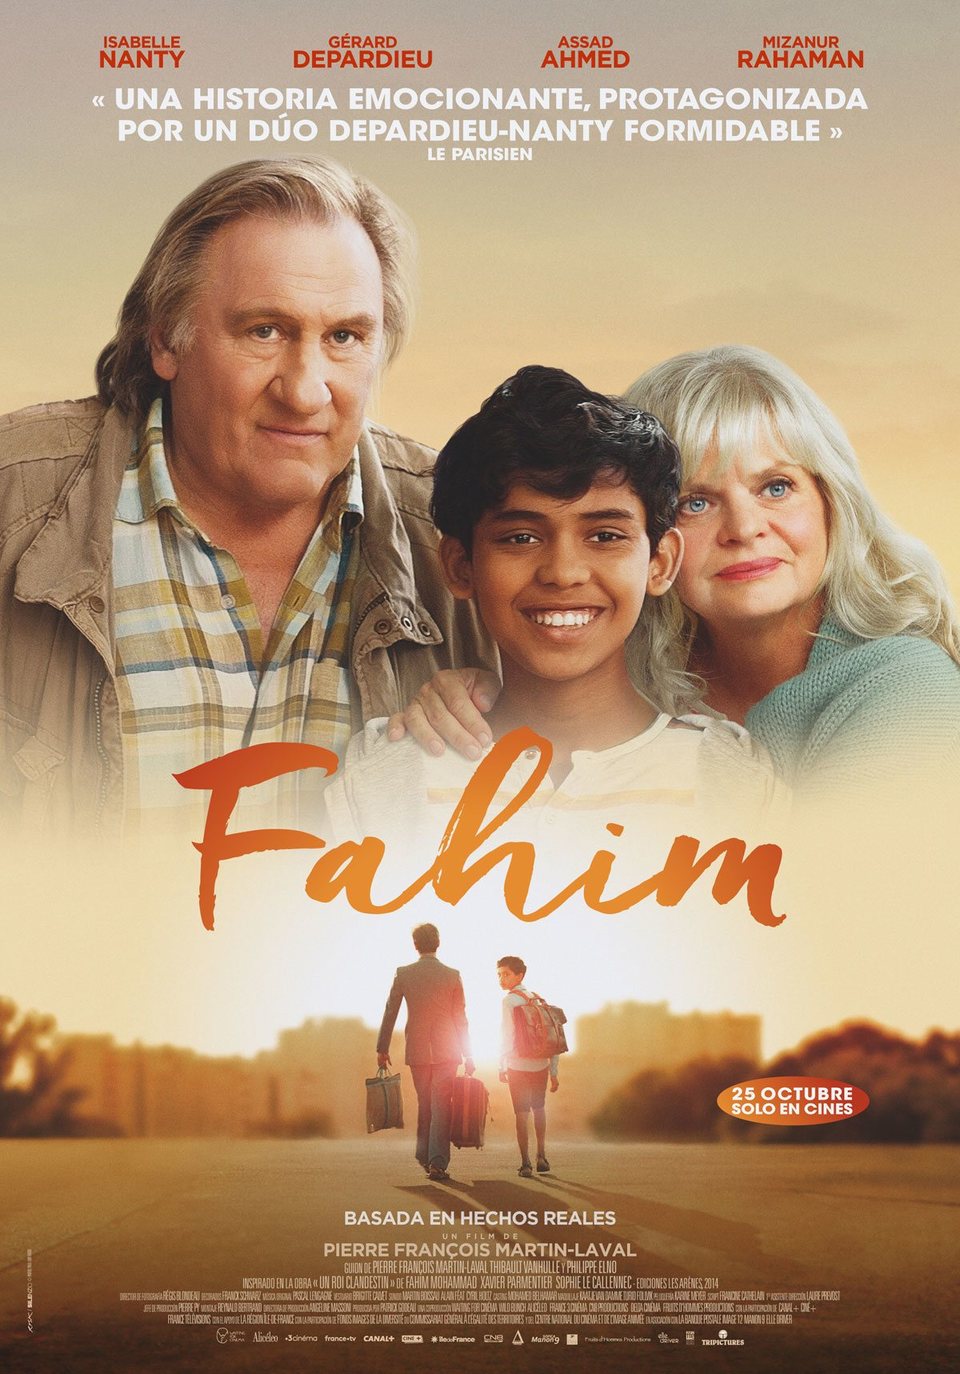 Poster of Fahim - España #1